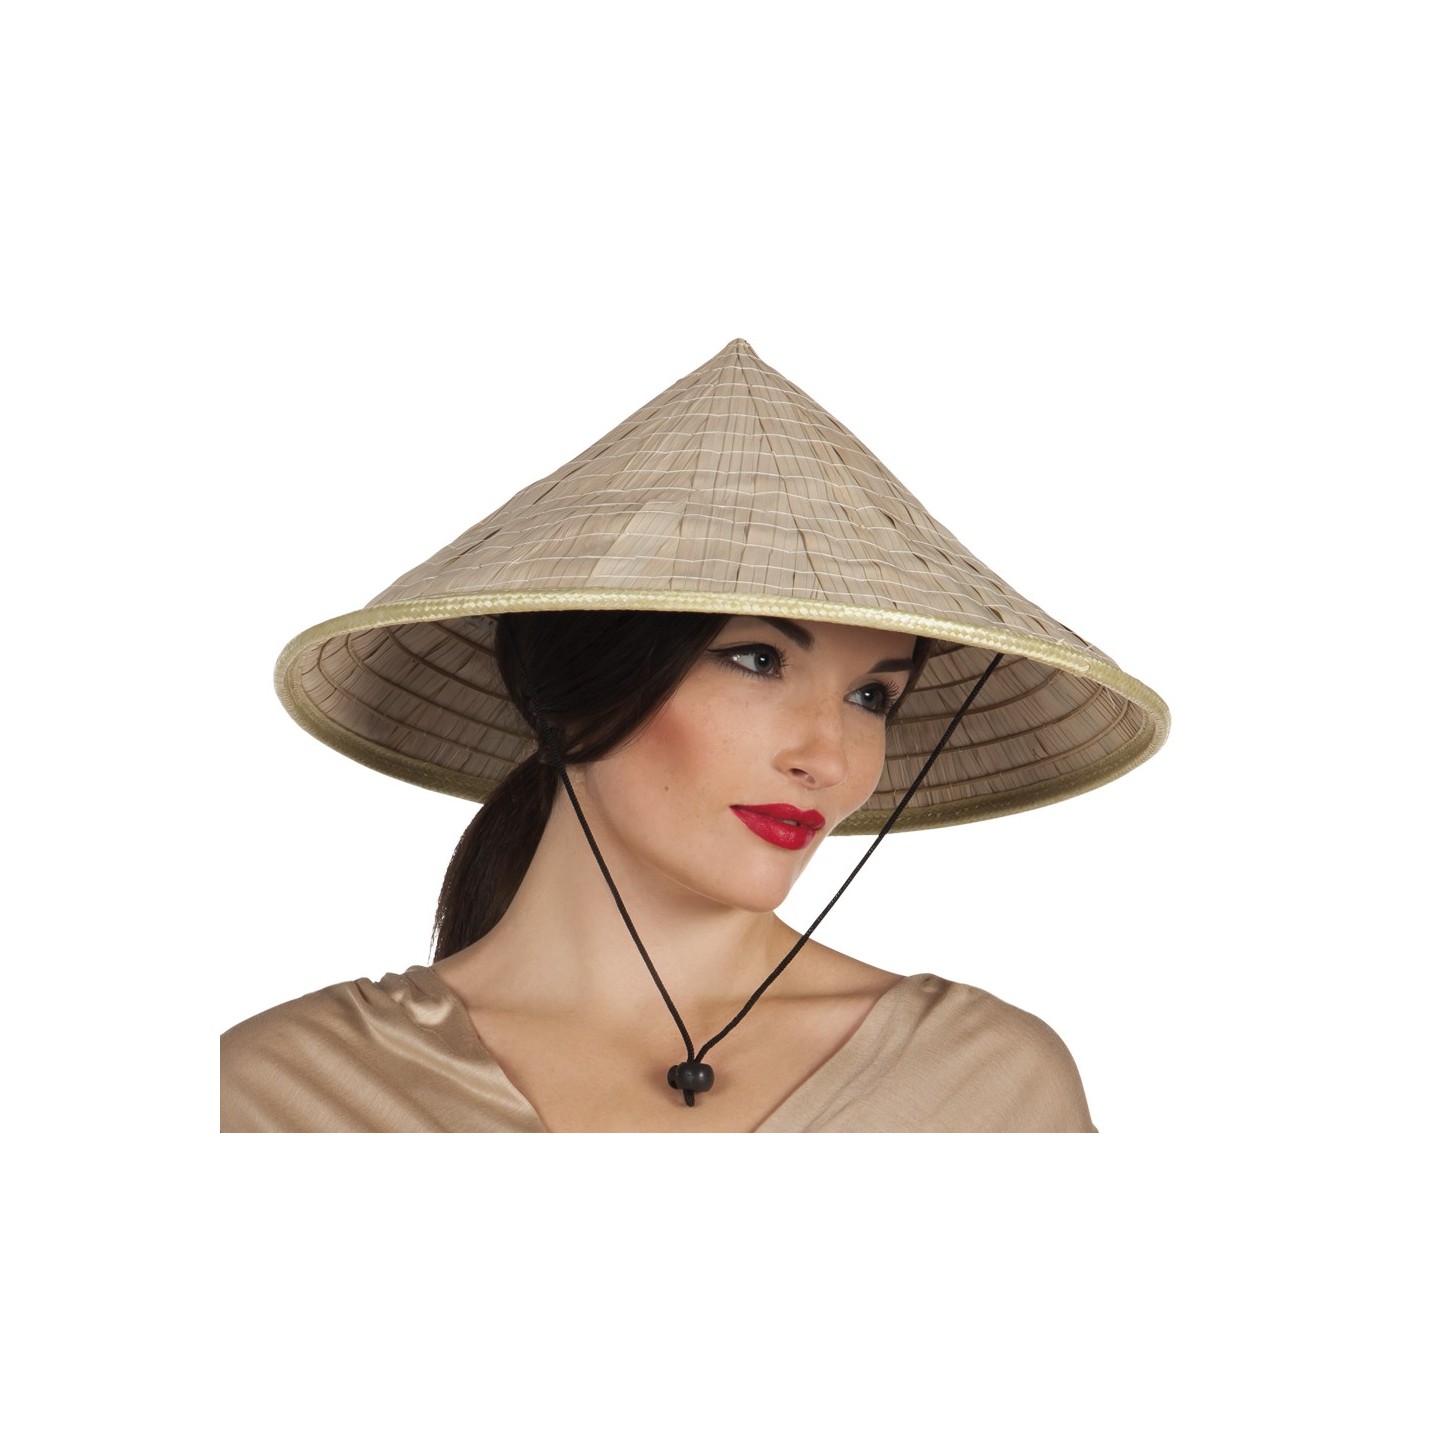 Toneelschrijver Slim Alcatraz Island Chinese hoed stro | Jokershop.be - Verkleedwinkel